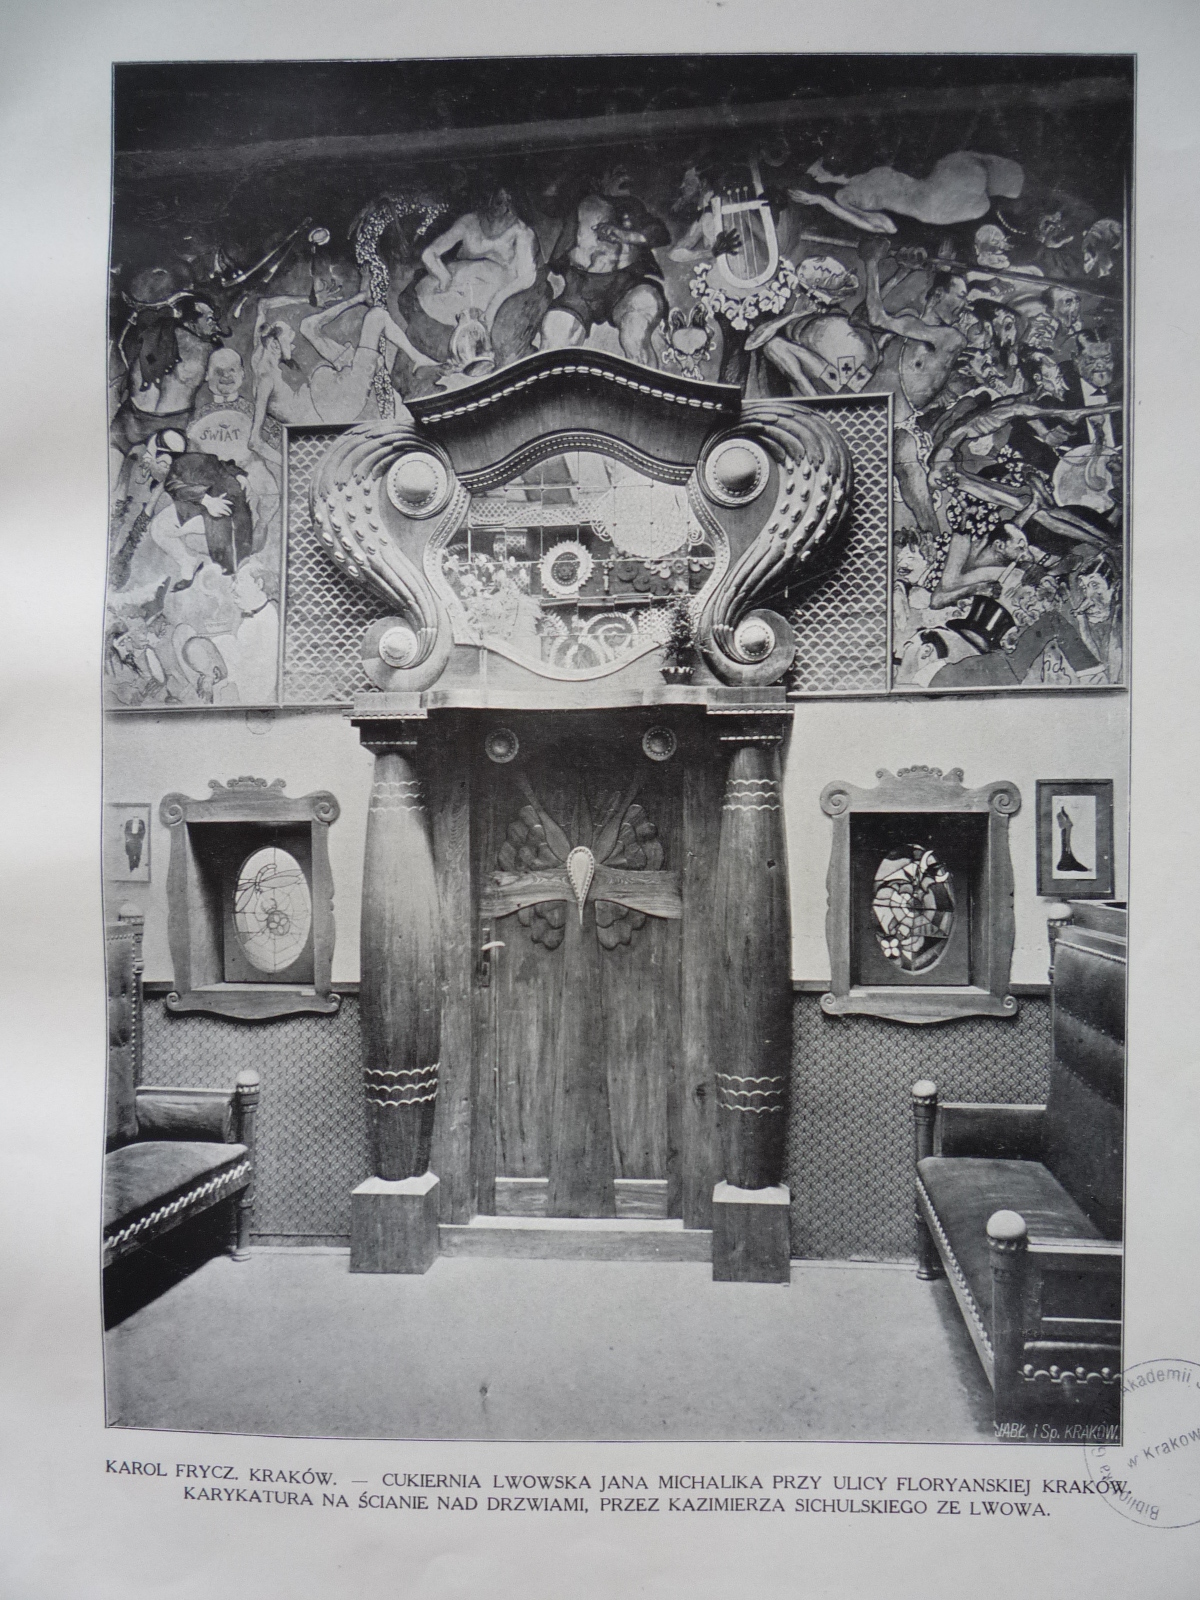 Wnętrze Jamy Michalika, z prawej strony widoczna na ścianie litografia Karola Frycza, fotografia archiwalna